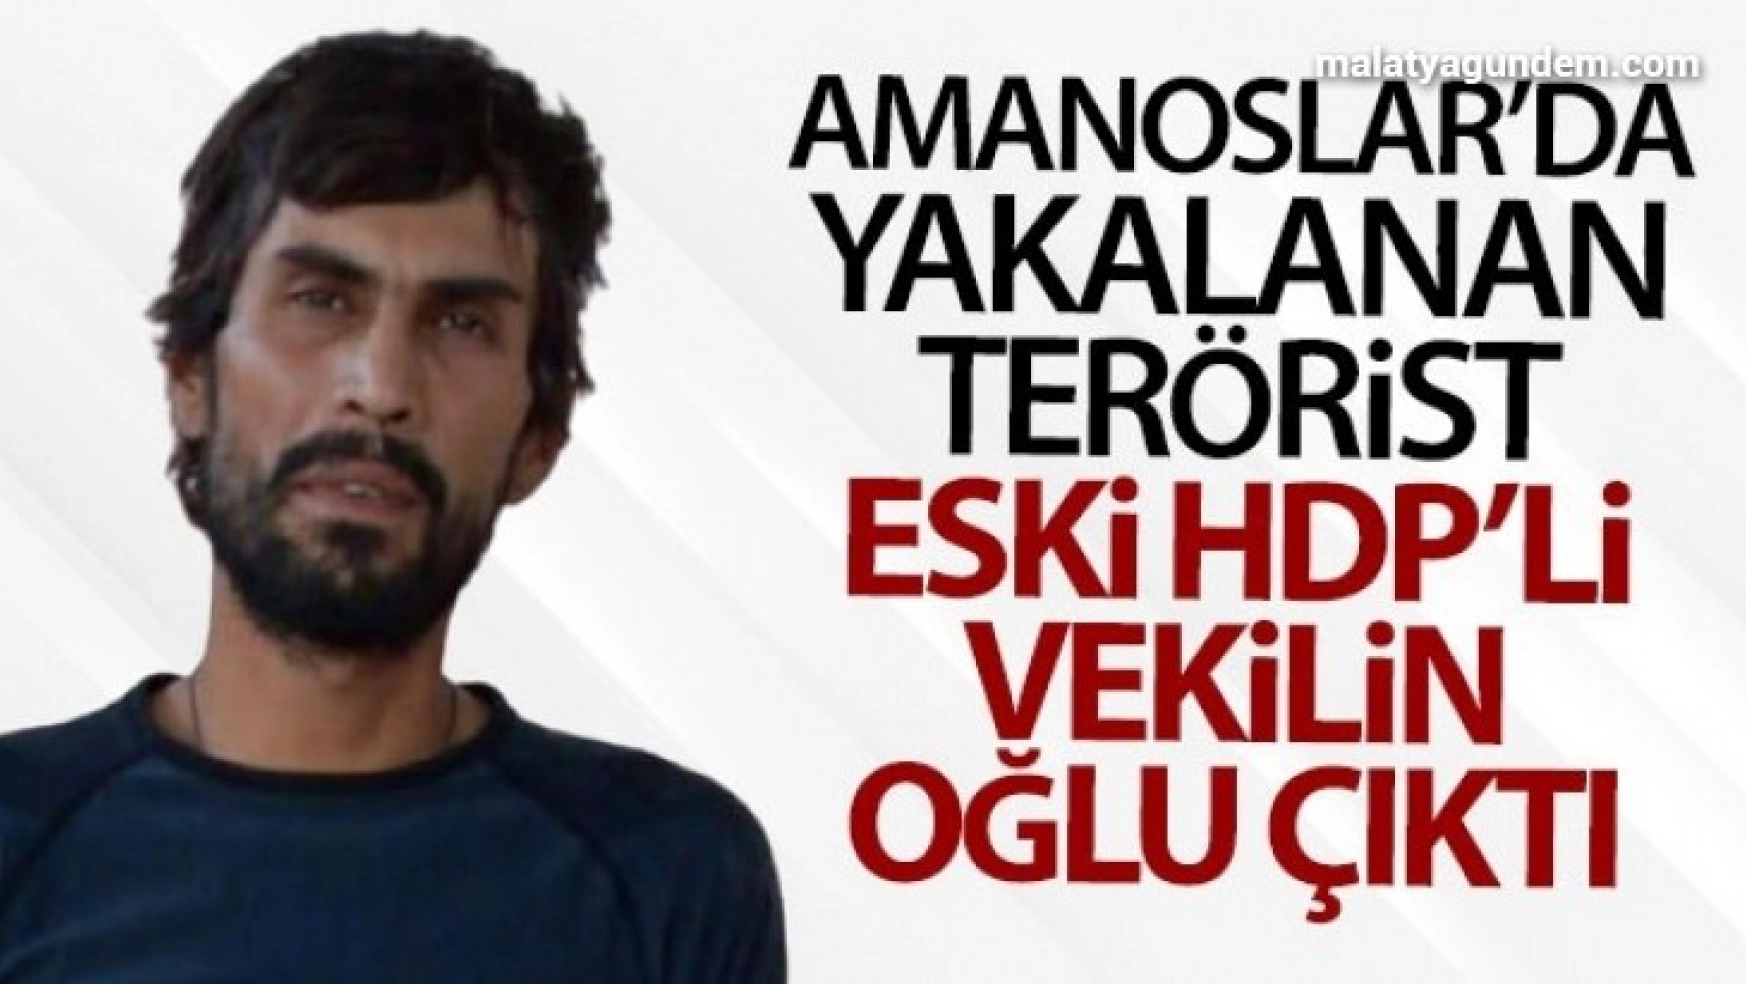 Yakalanan terörist, eski HDP li vekilin oğlu çıktı